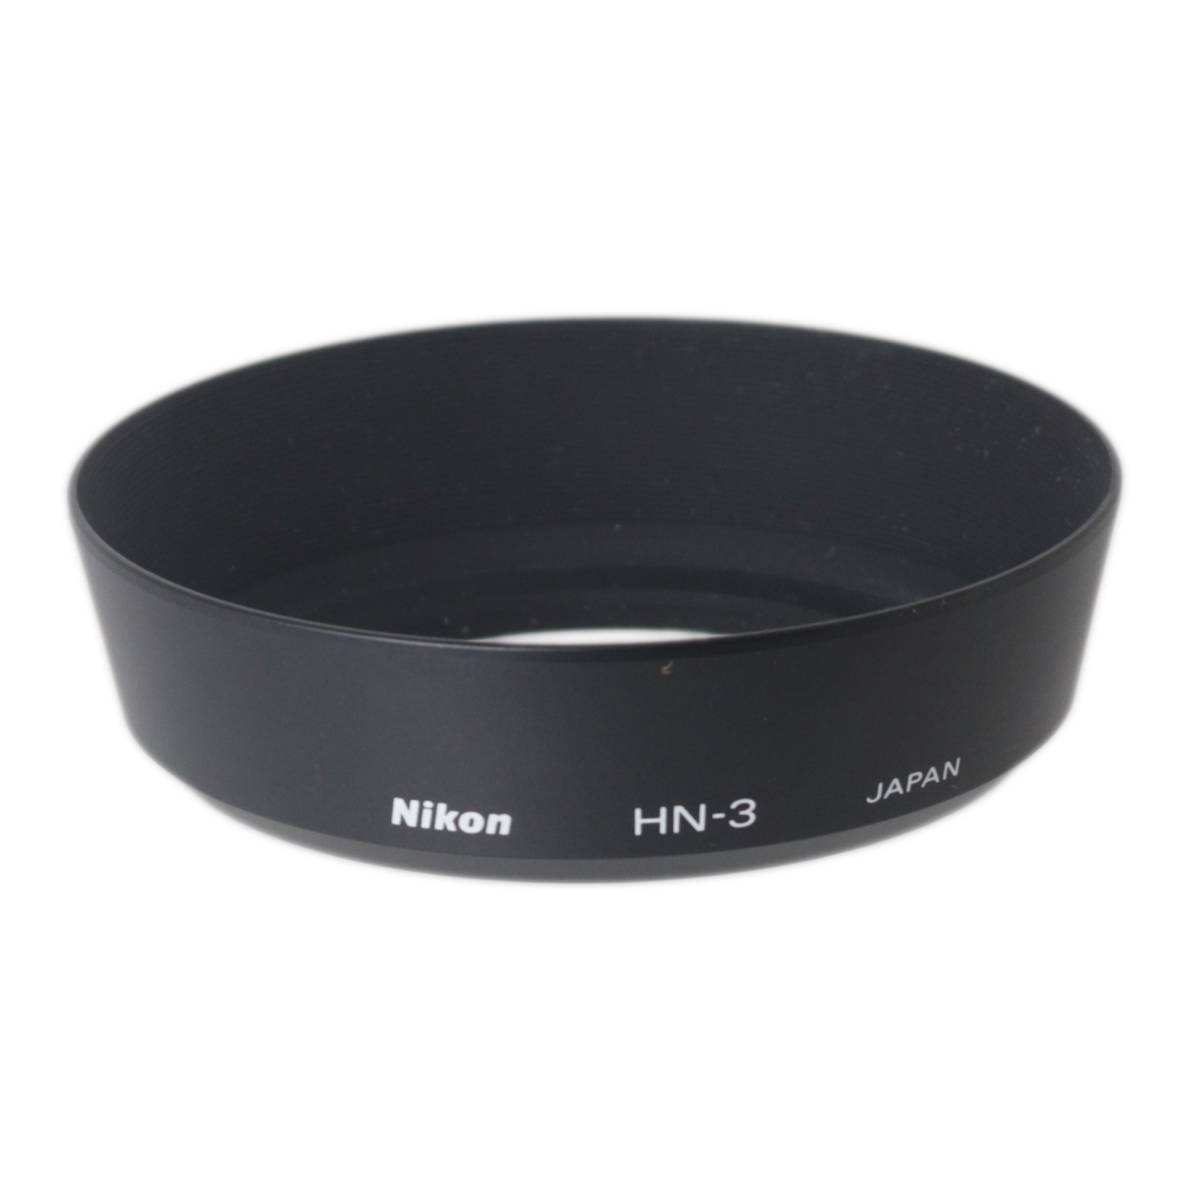  Nikon Nikon HN-3 metal hood 52mm diameter 35mm for 